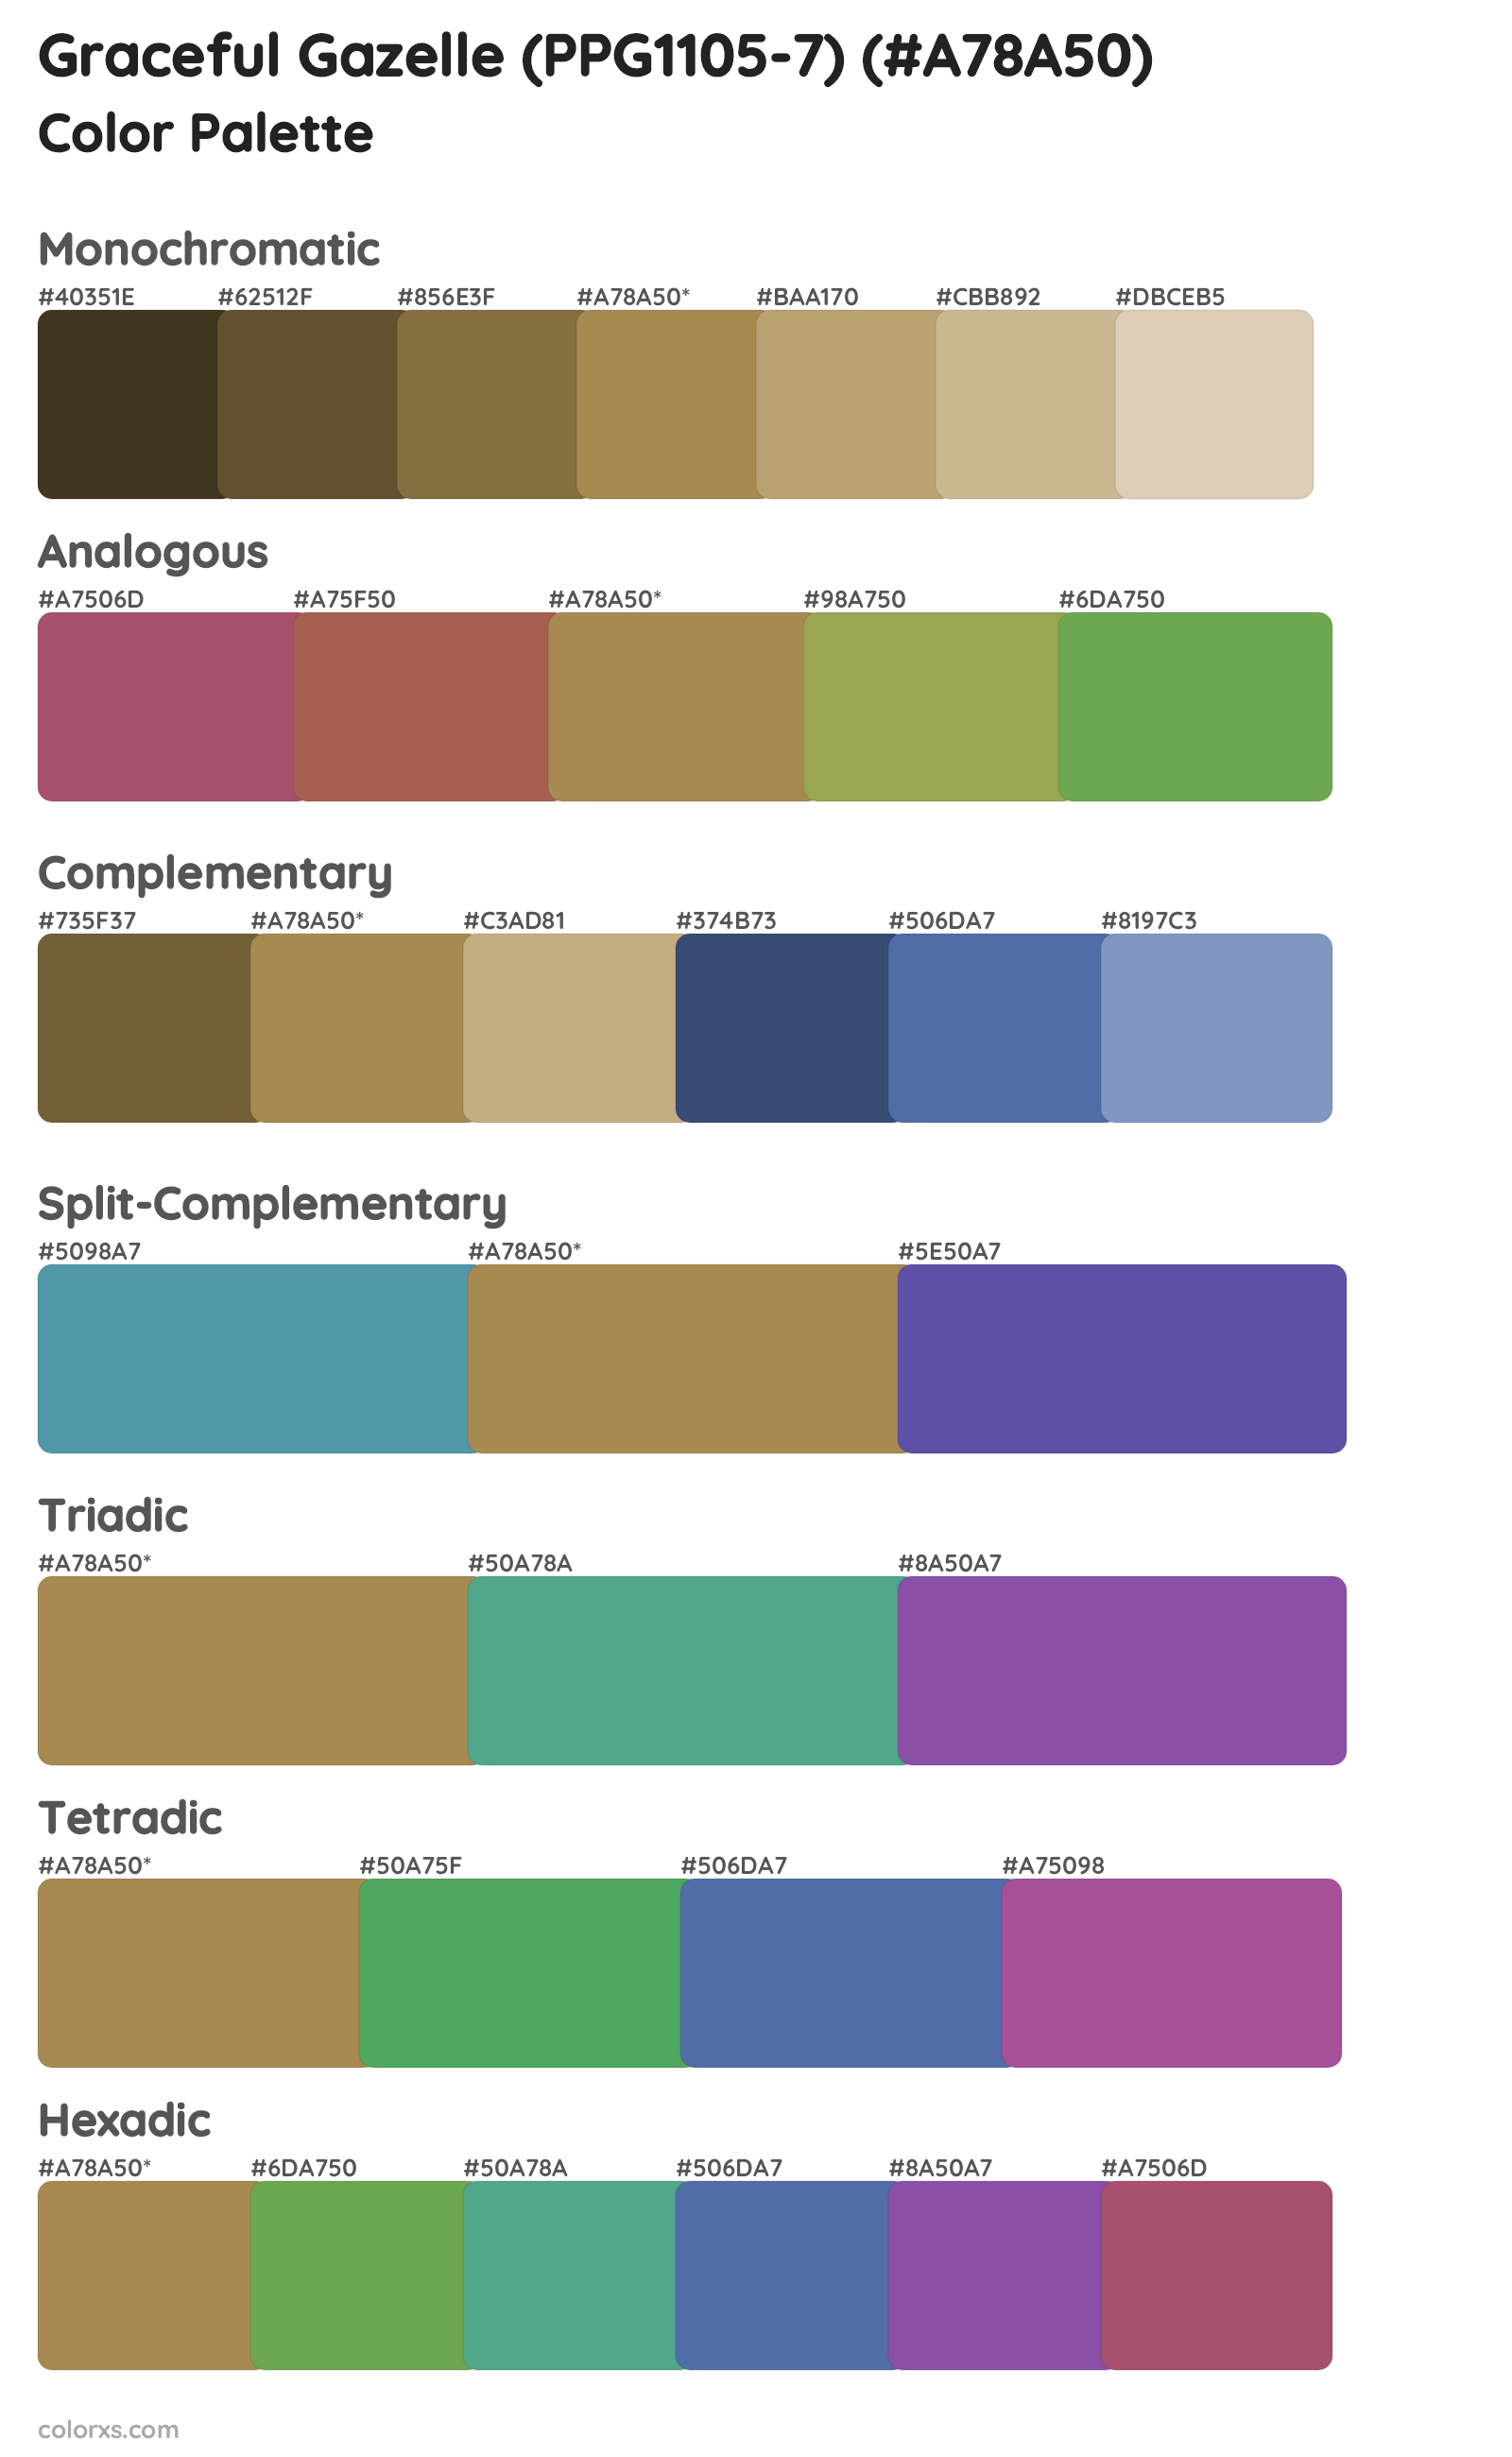 Graceful Gazelle (PPG1105-7) Color Scheme Palettes